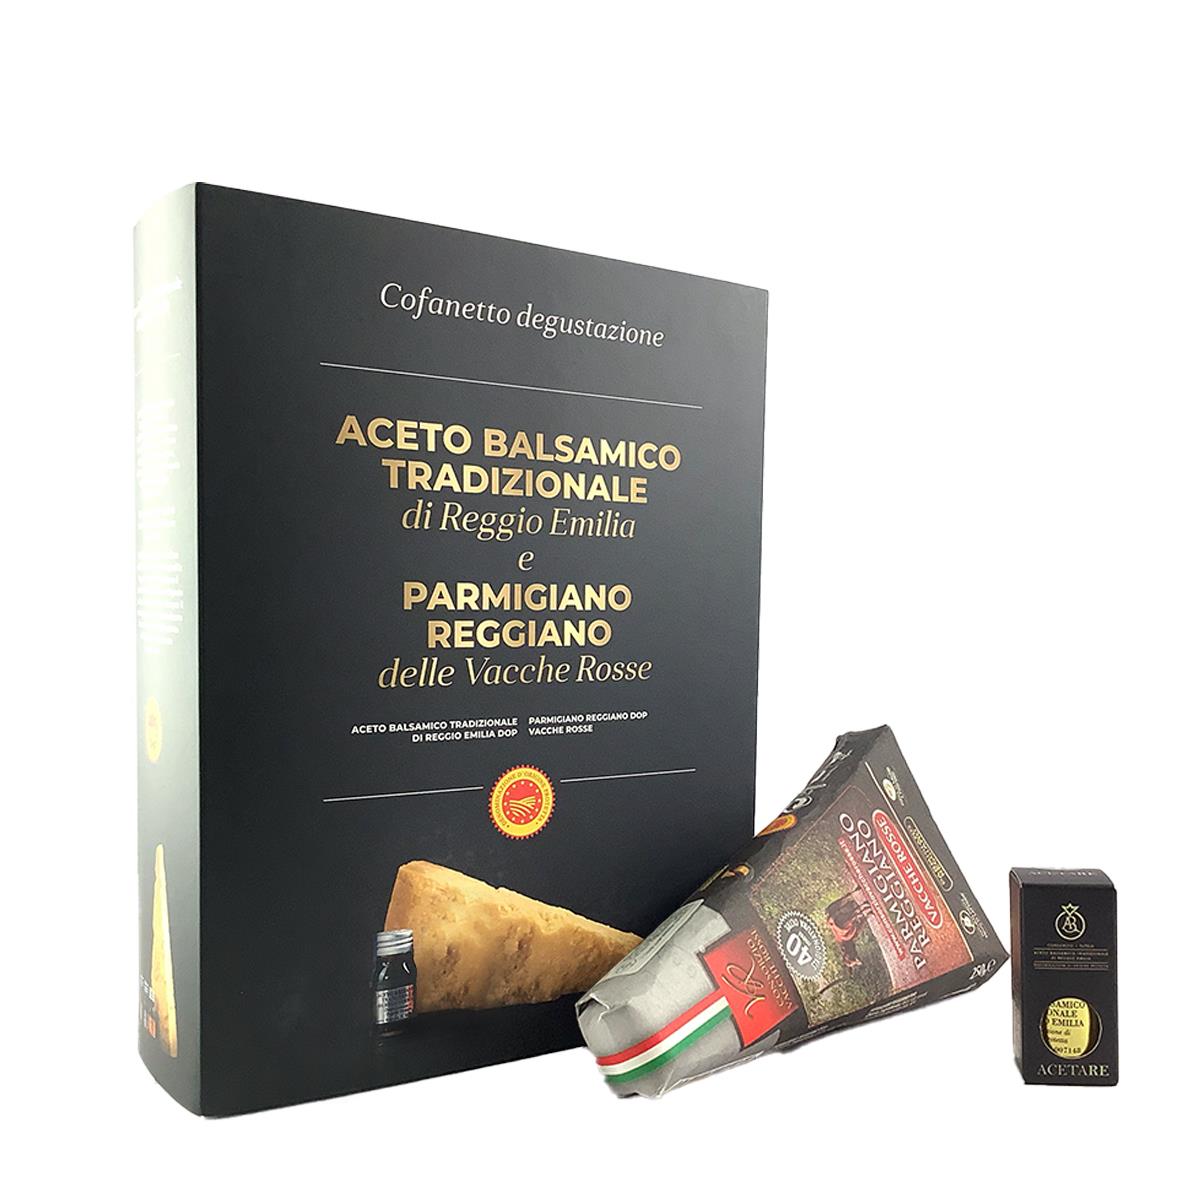 Caja de Parmigiano Reggiano Vacche Rosse 40 Meses y Vinagre Balsámico Calidad Reggio Emilia Oro